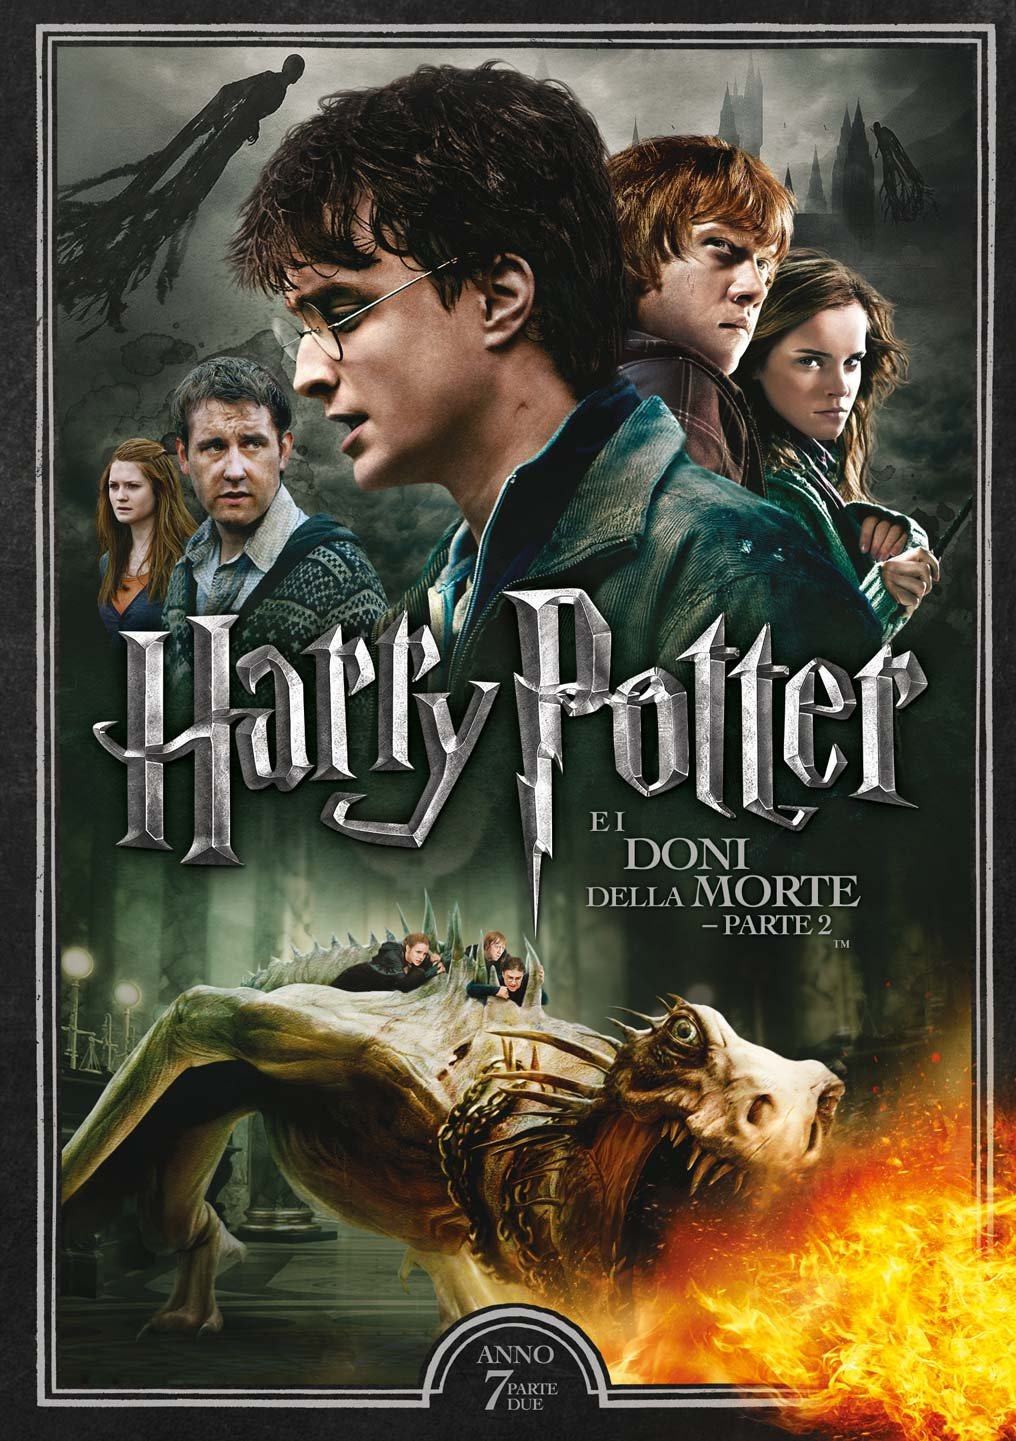 Harry Potter e i doni della morte – Parte 2 [HD/3D] (2011)